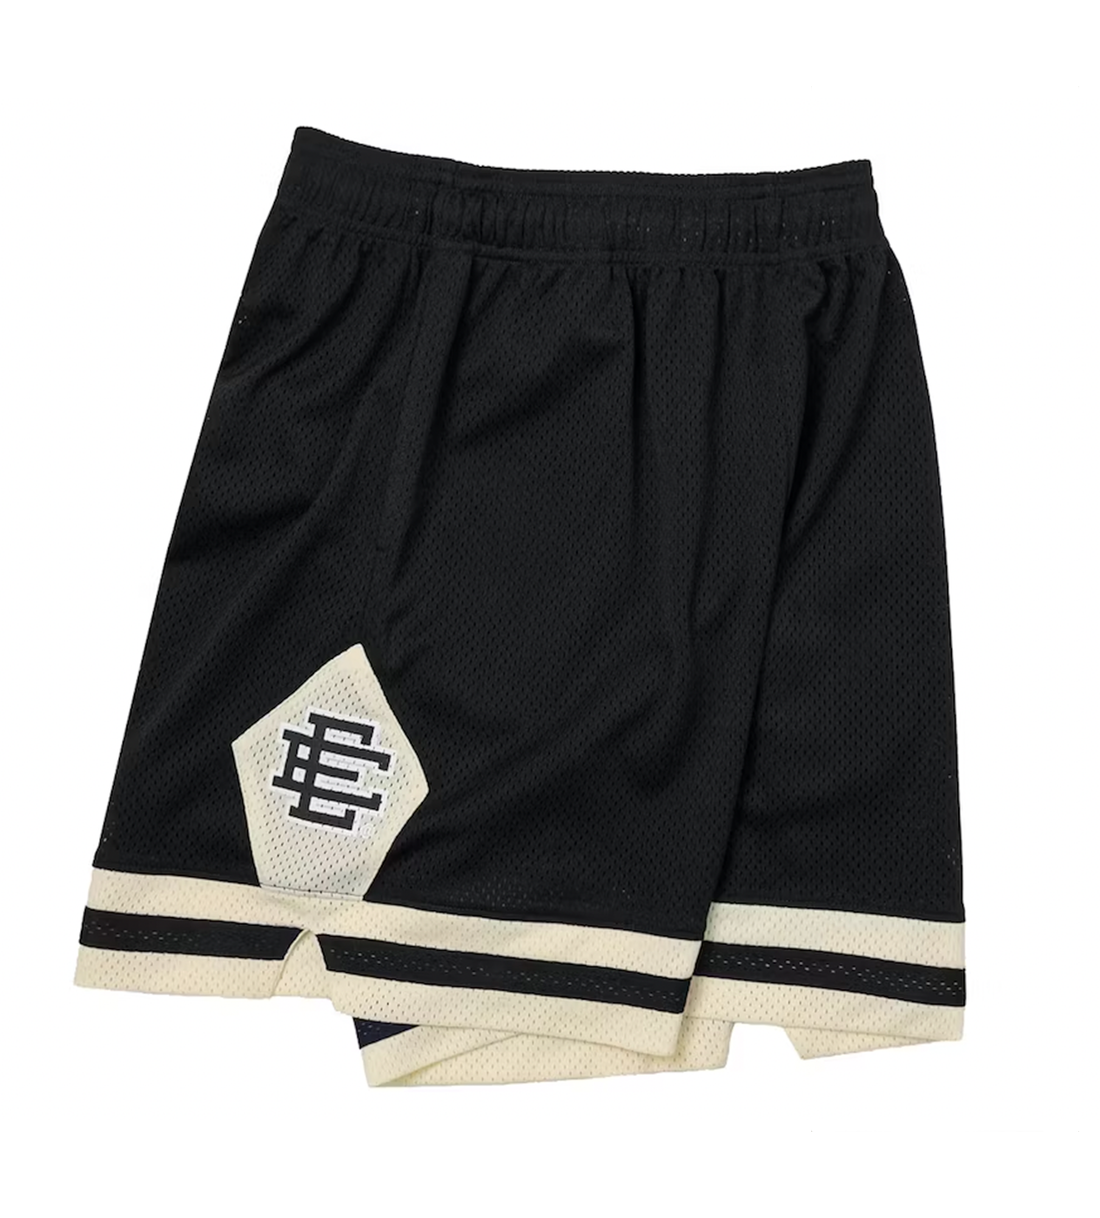 Eric Emanuel Black/Cream Shorts